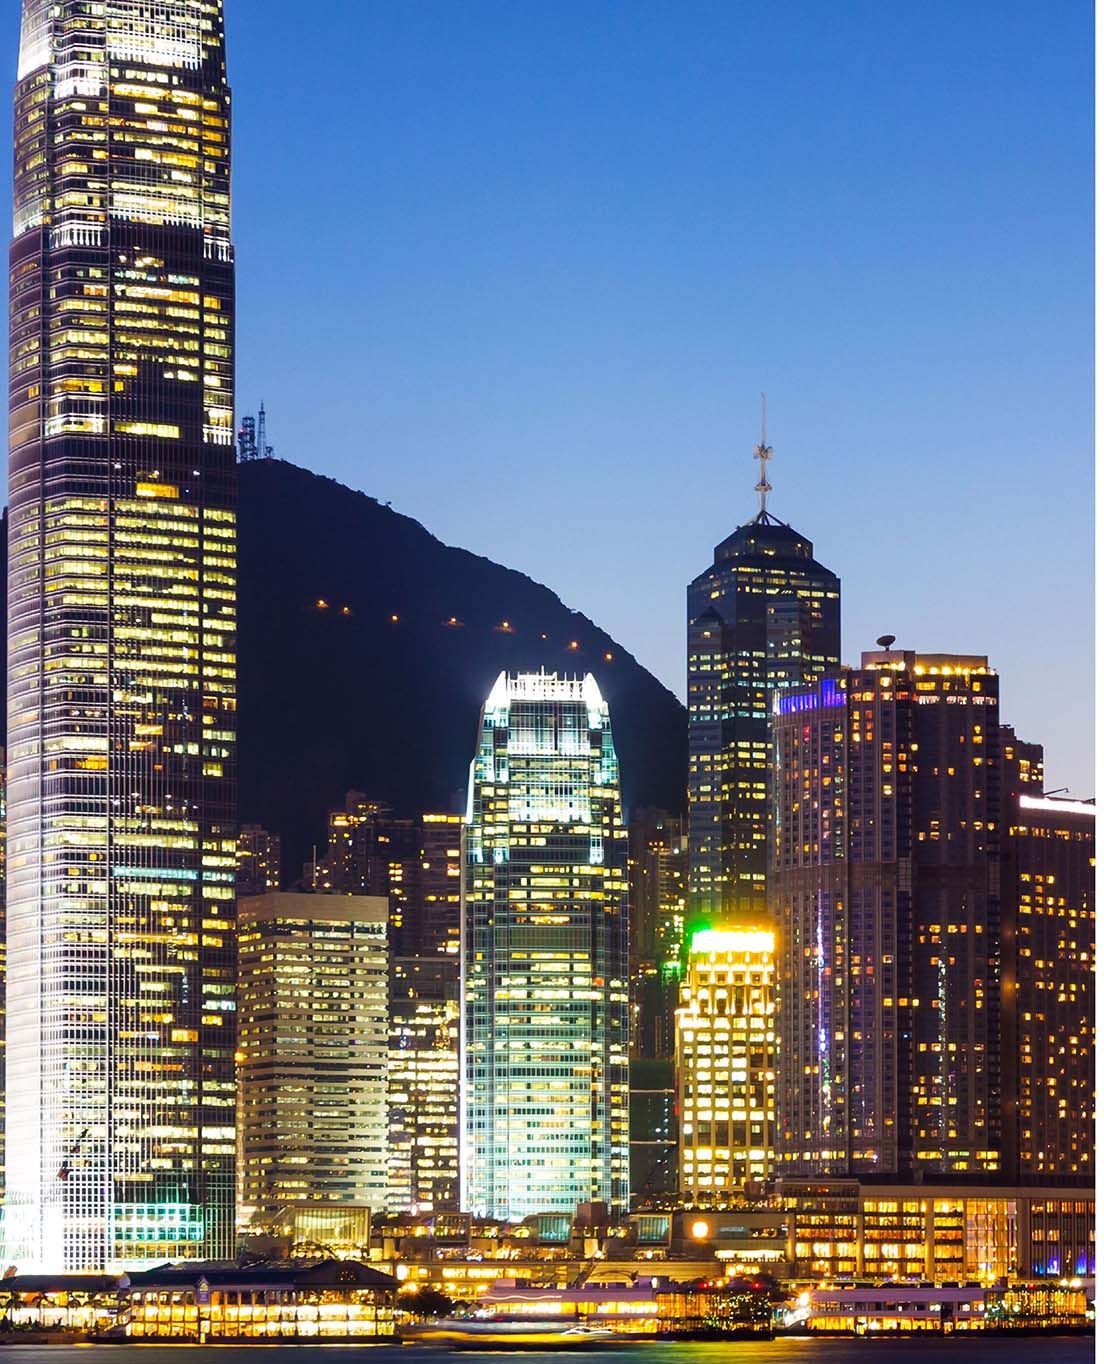 Hong Kong at a glance